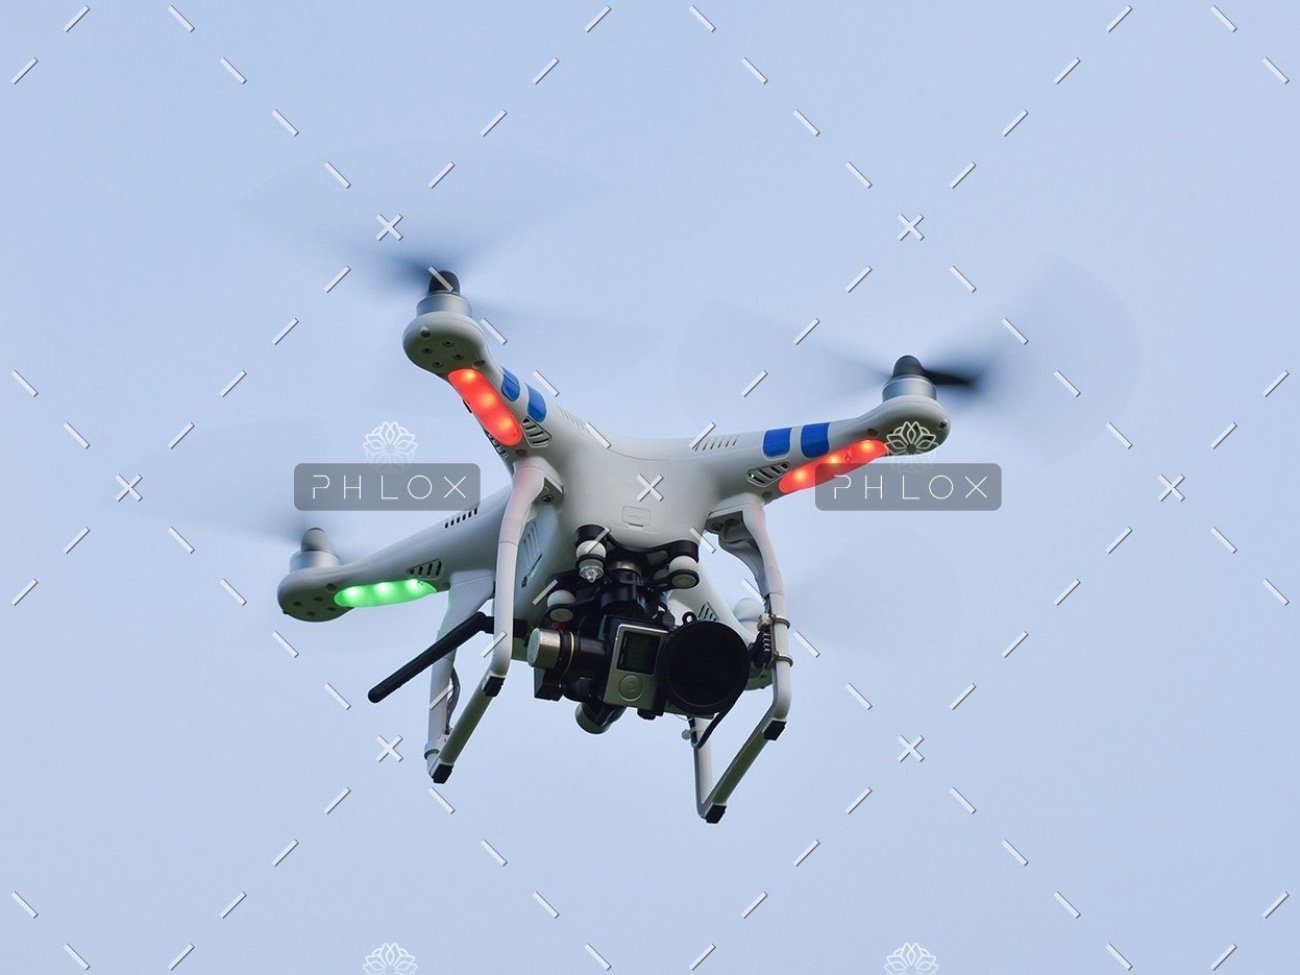 demo-attachment-82-camera-drone-fly-109003